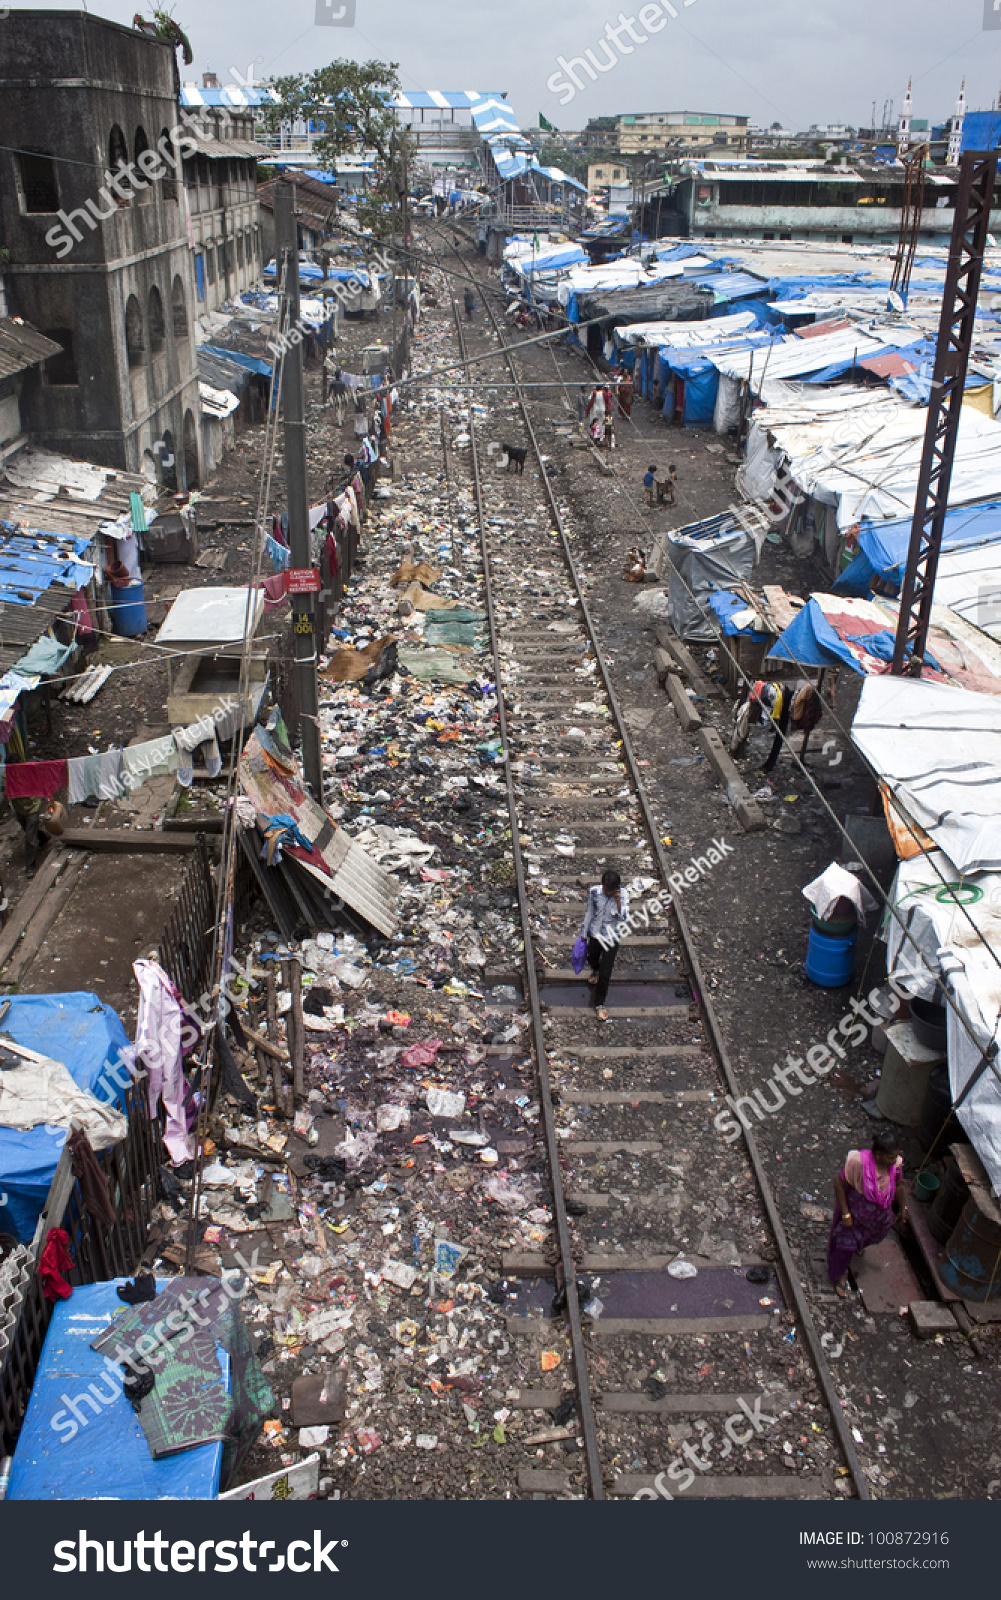 stock-photo-mumbai-august-unidentified-poor-people-living-in-slum-at-august-in-mumbai-india-100872916.jpg